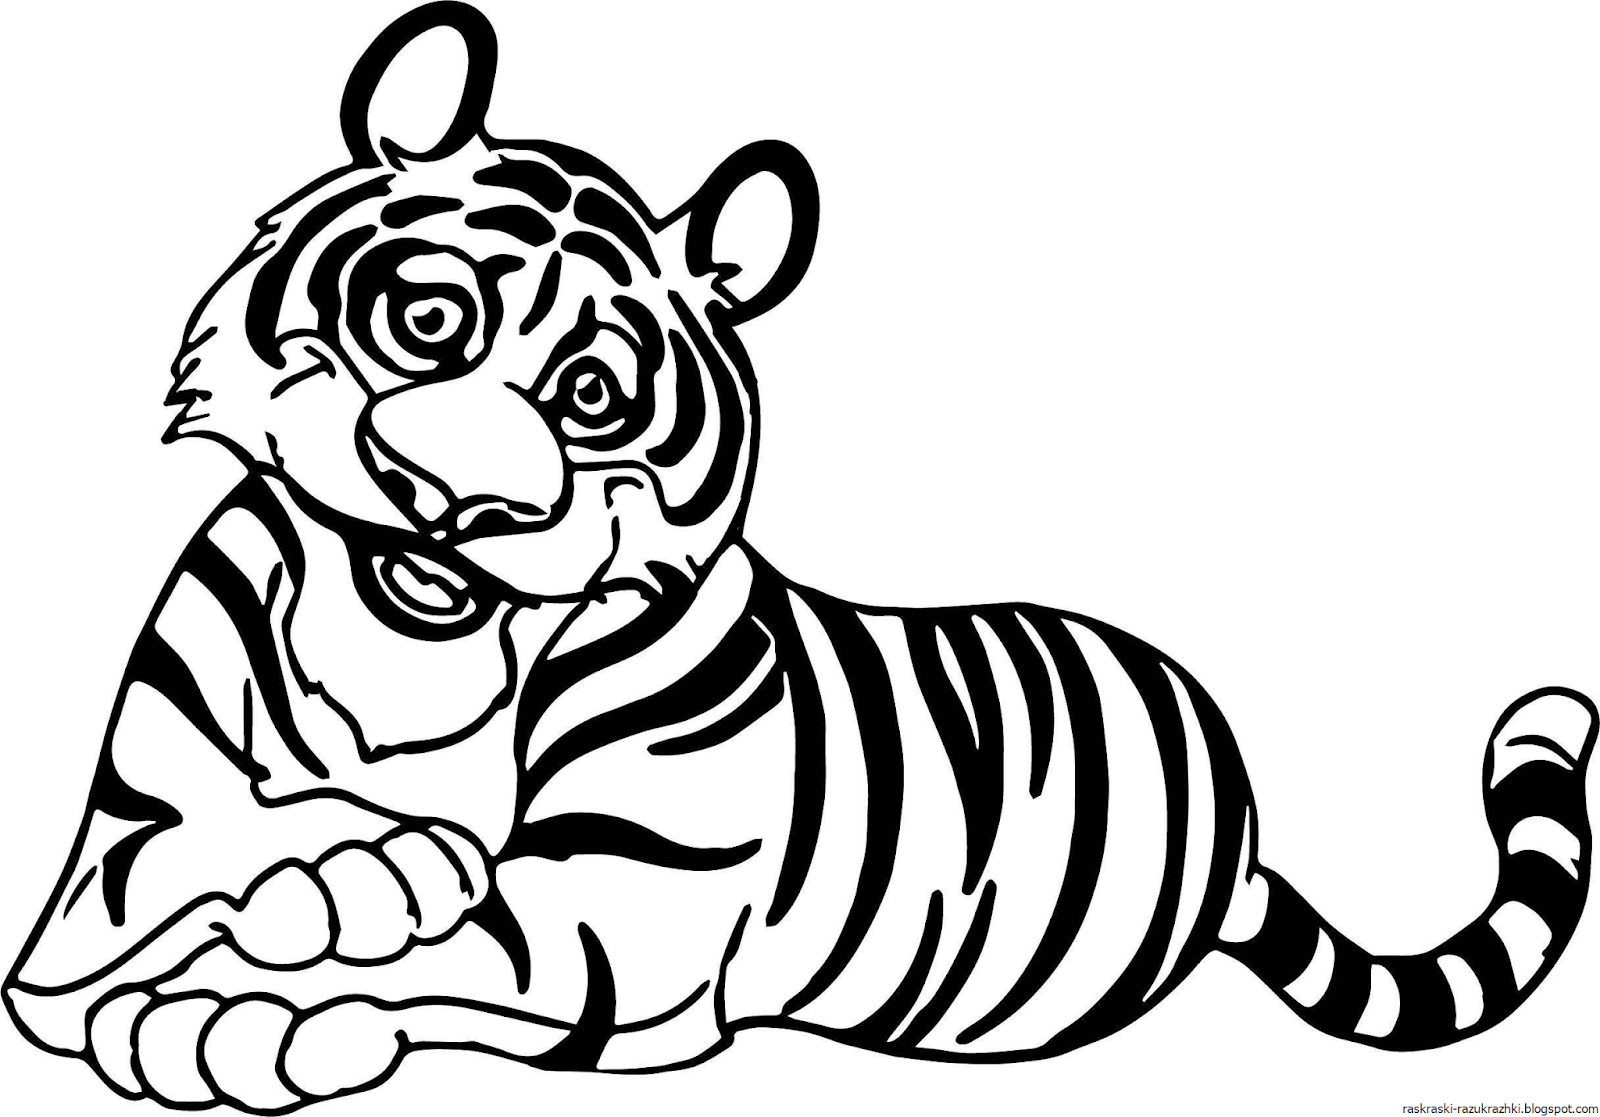 Раскраска Тигр распечатать или скачать